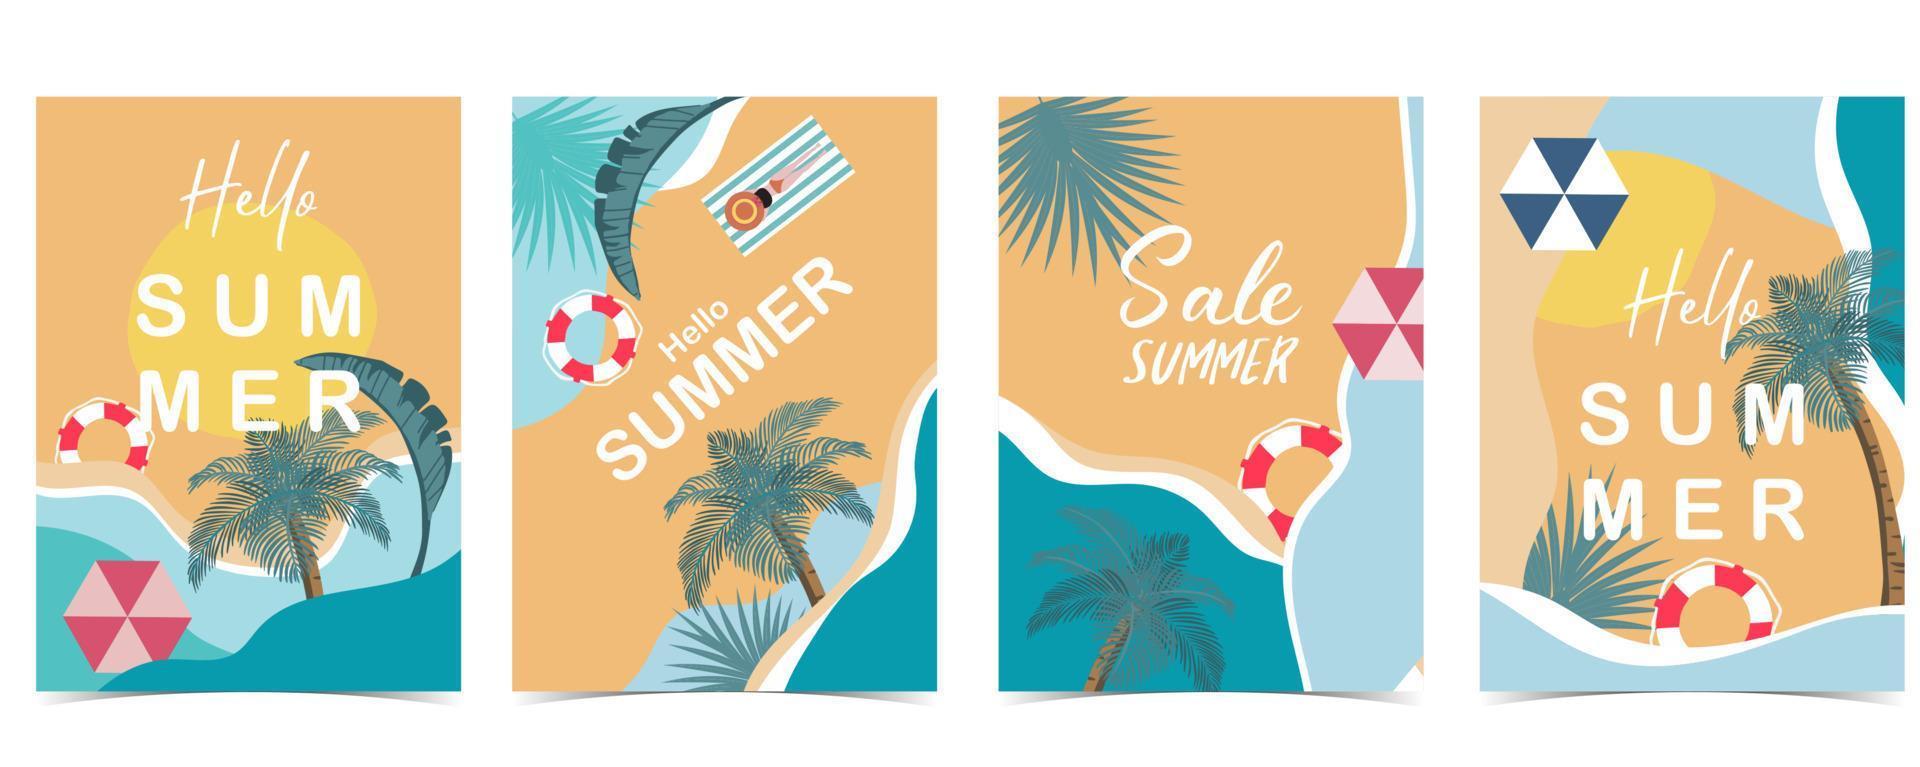 postal de verano con mar y playa en el fondo diurno vector